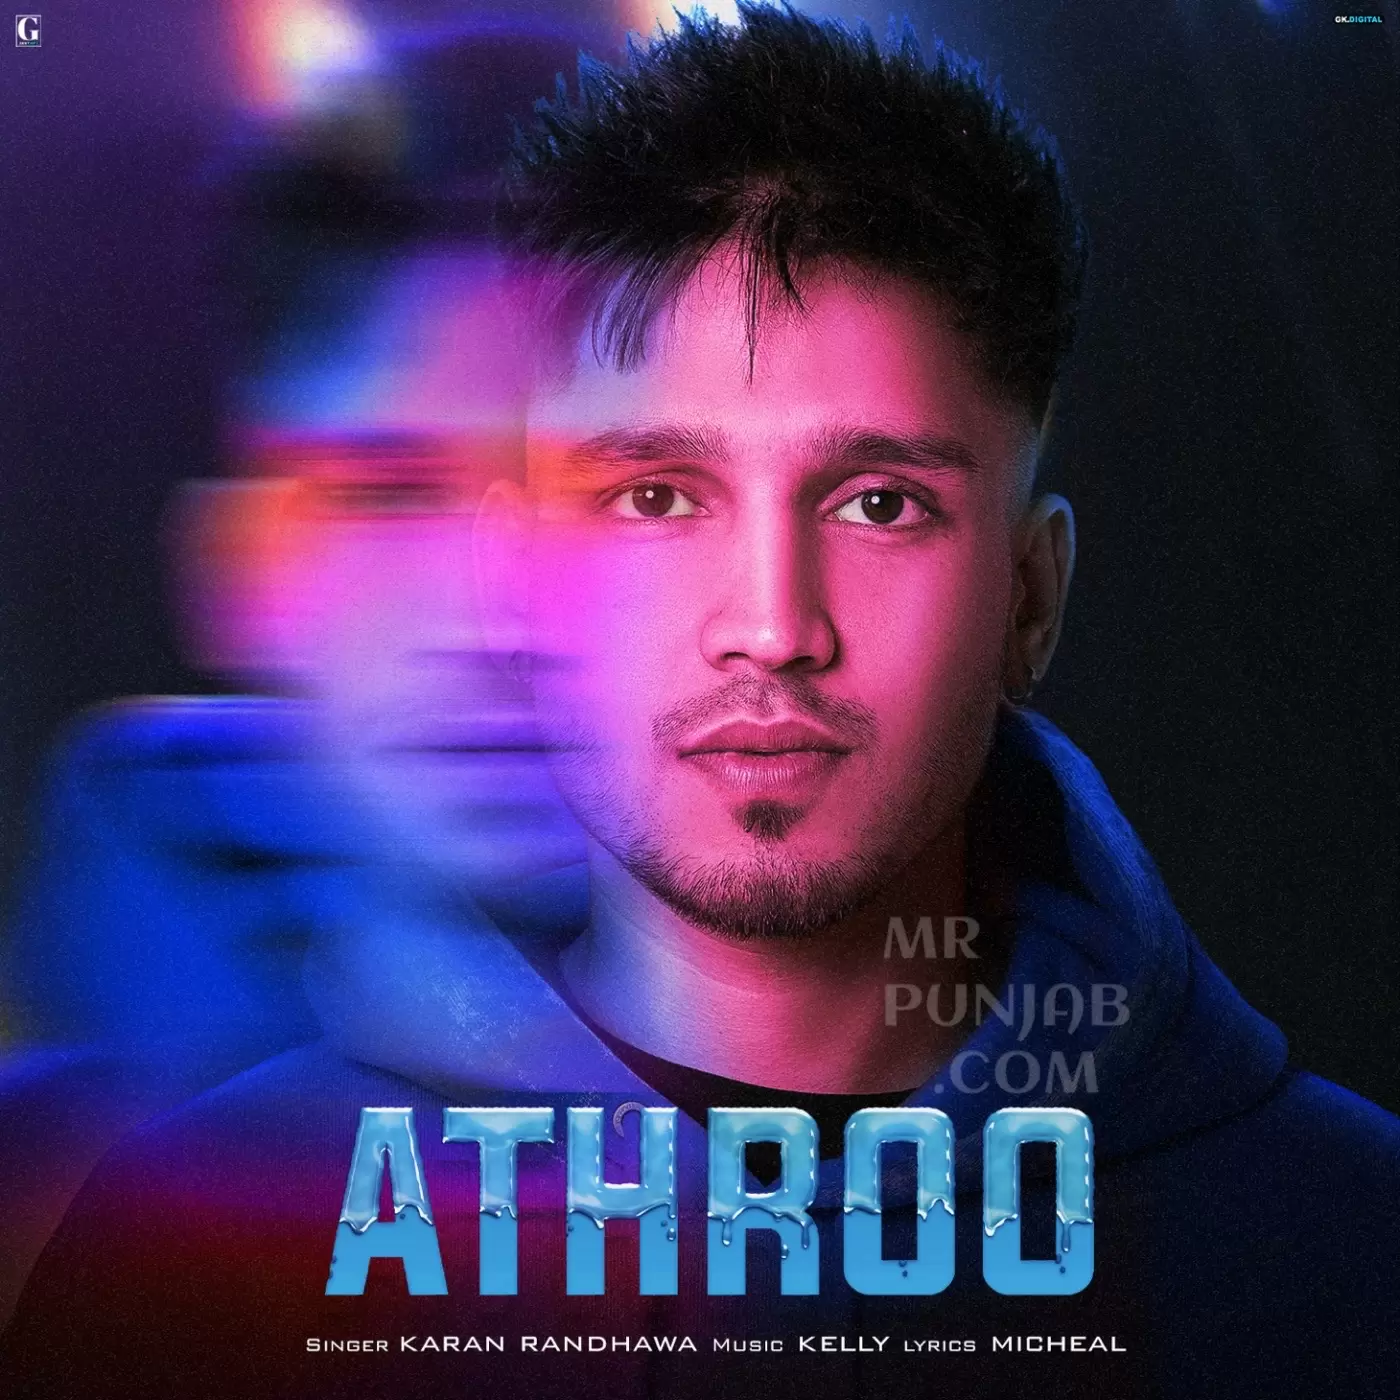 Athroo Karan Randhawa Mp3 Download Song - Mr-Punjab